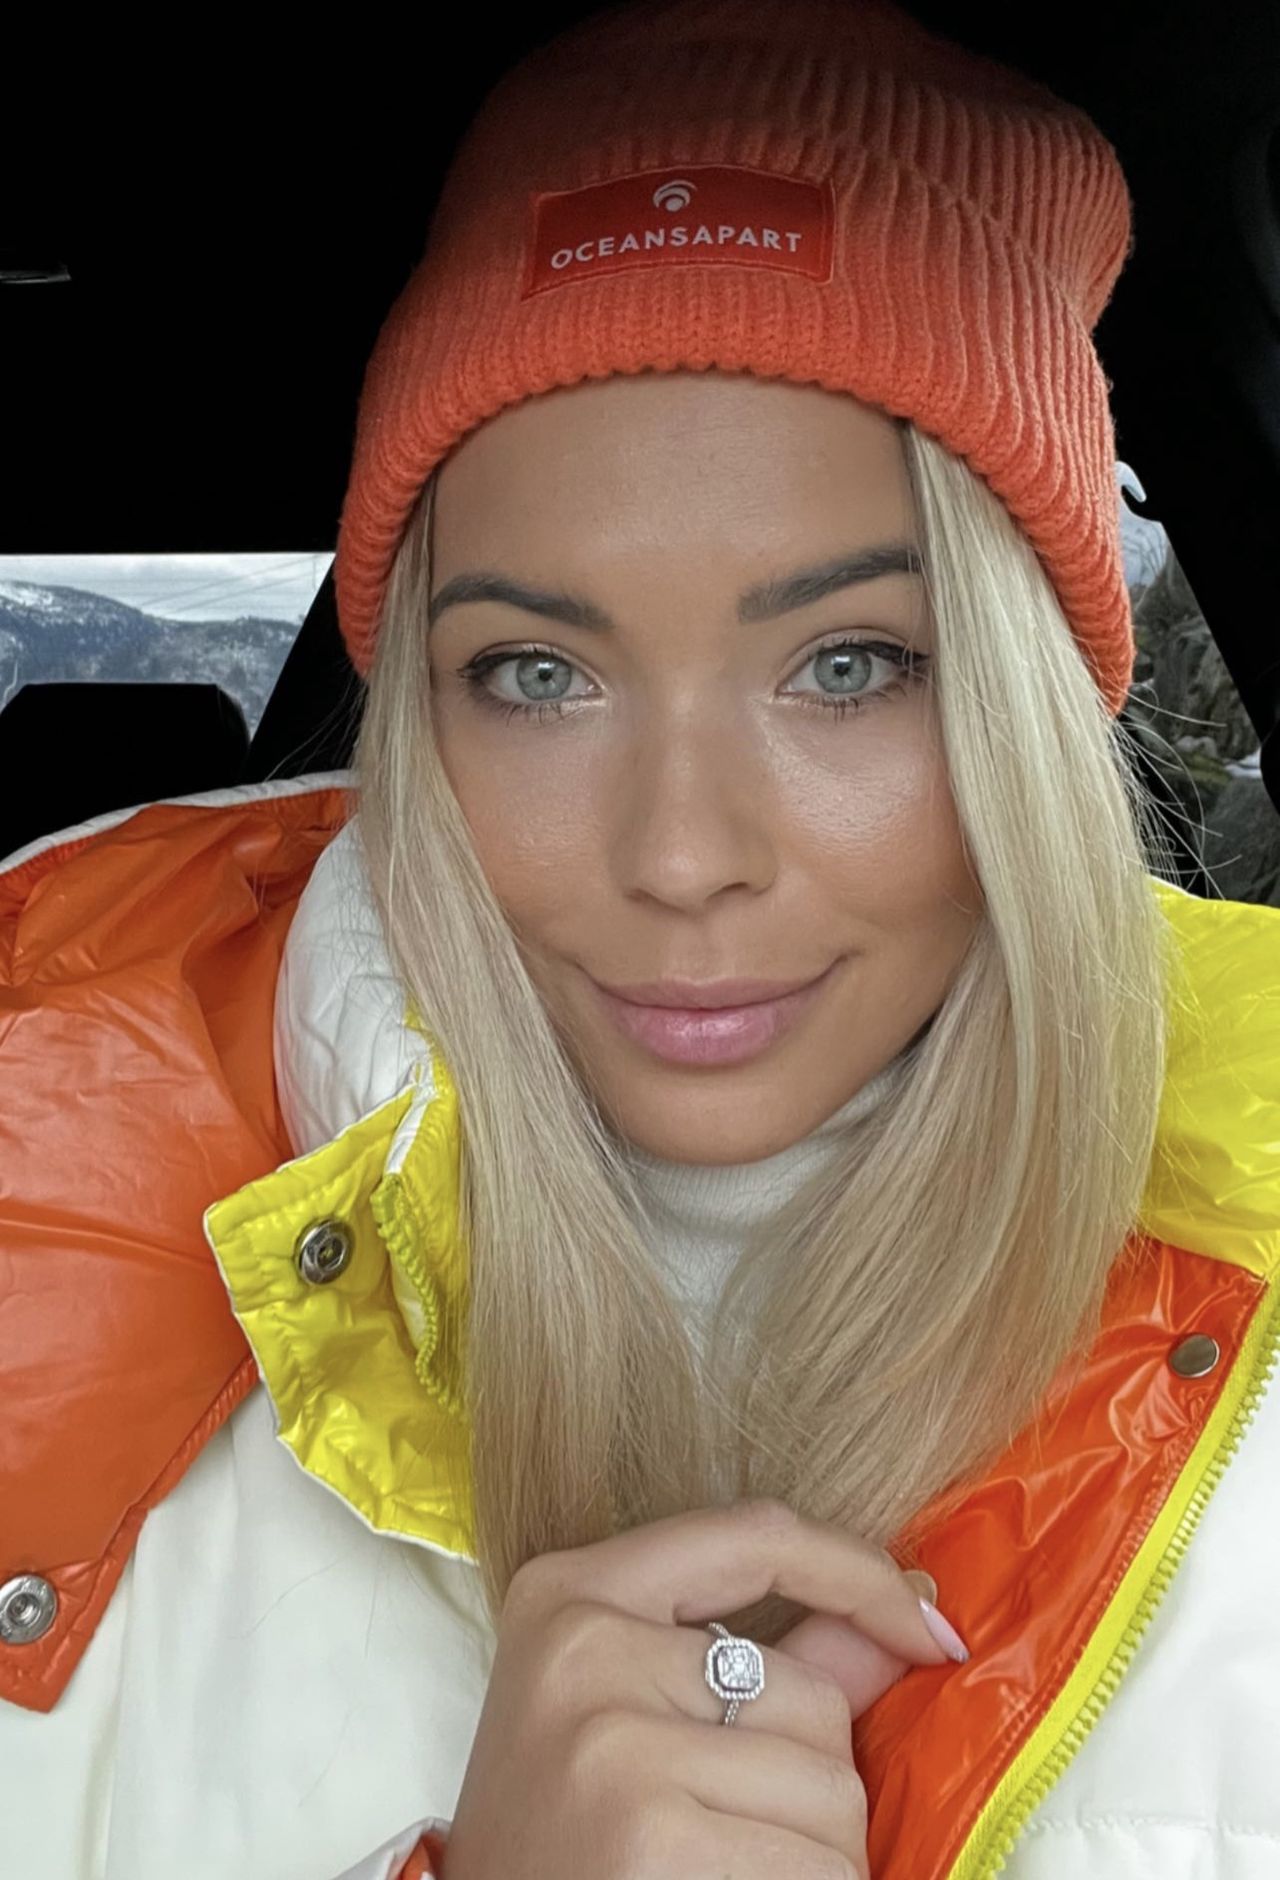 Sandra Kubicka lansuje modny odcień pomarańczy
Instagram/sandrakubicka